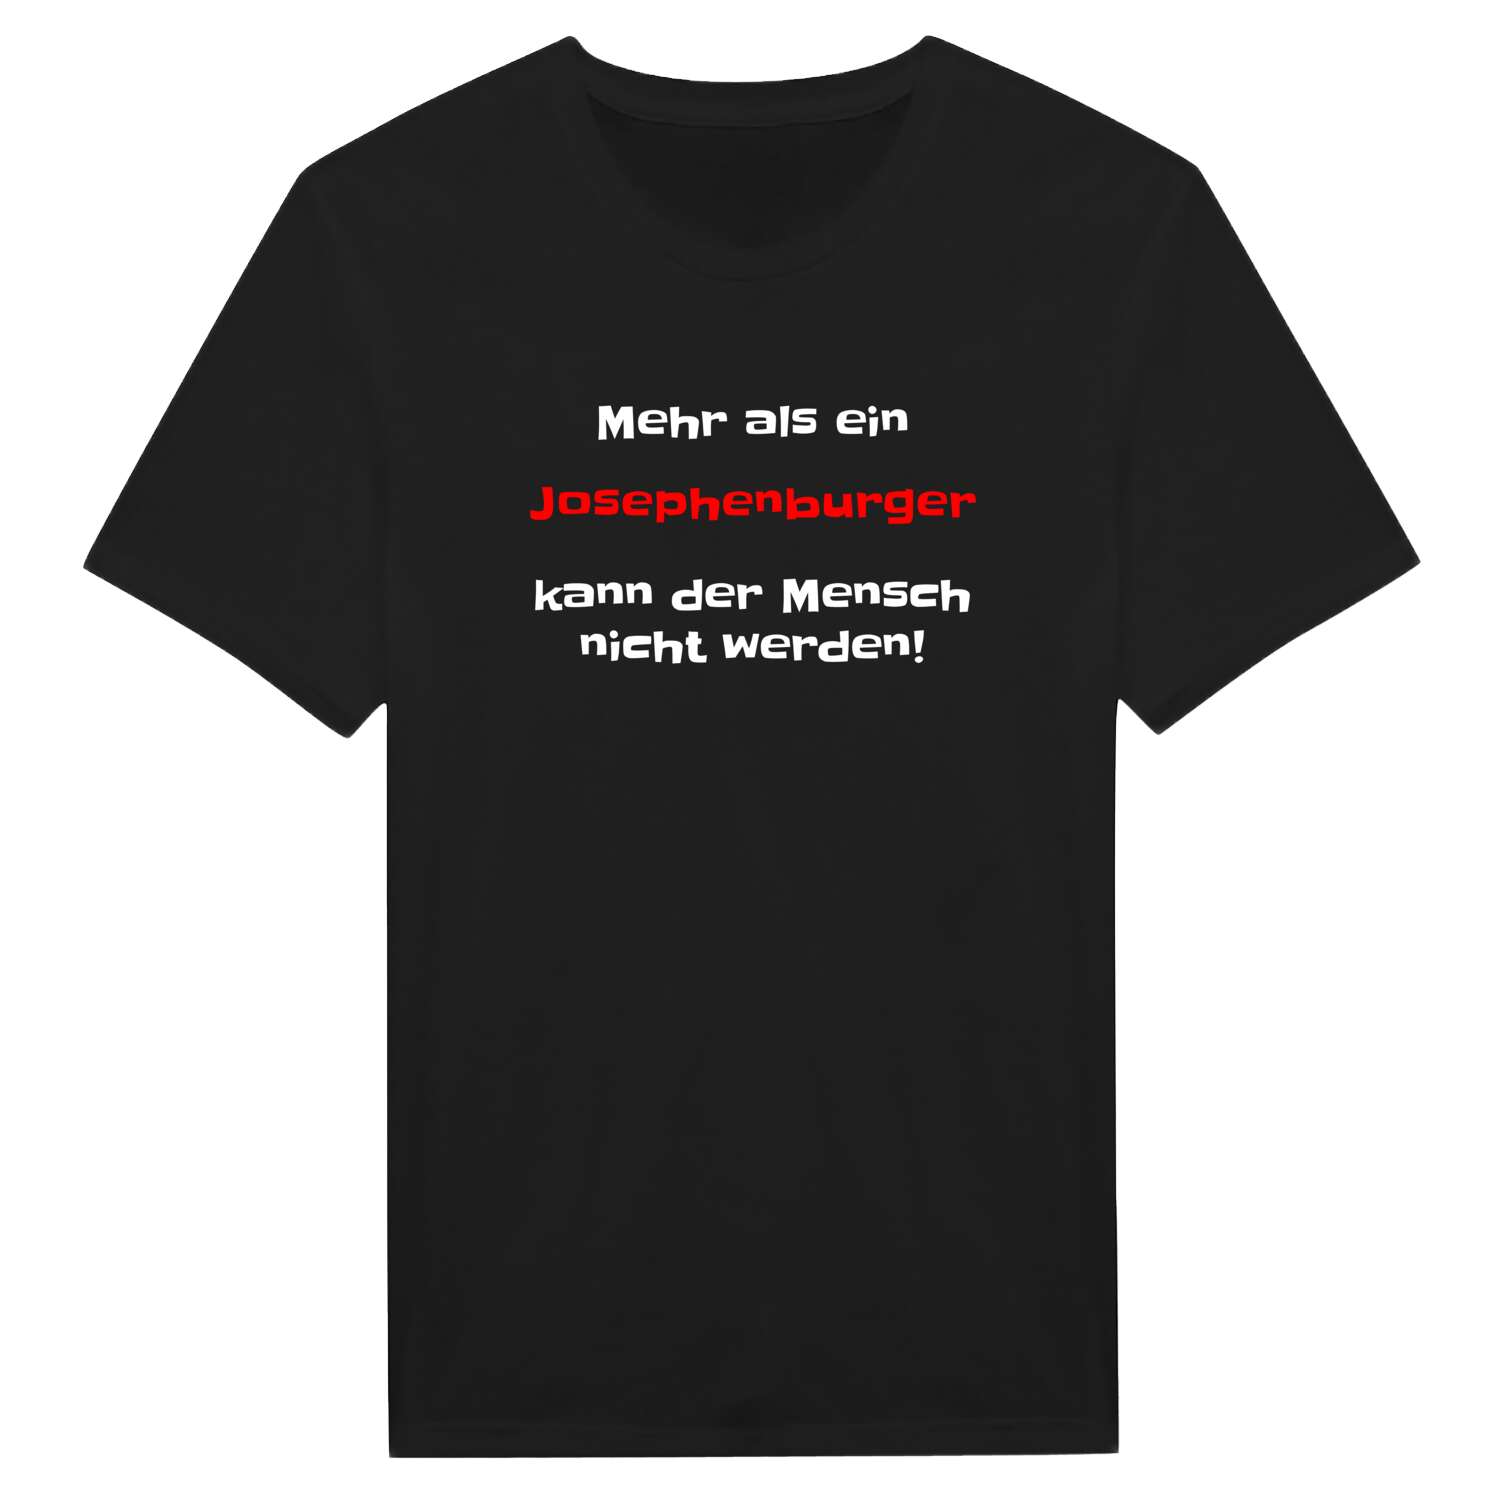 Josephenburg T-Shirt »Mehr als ein«